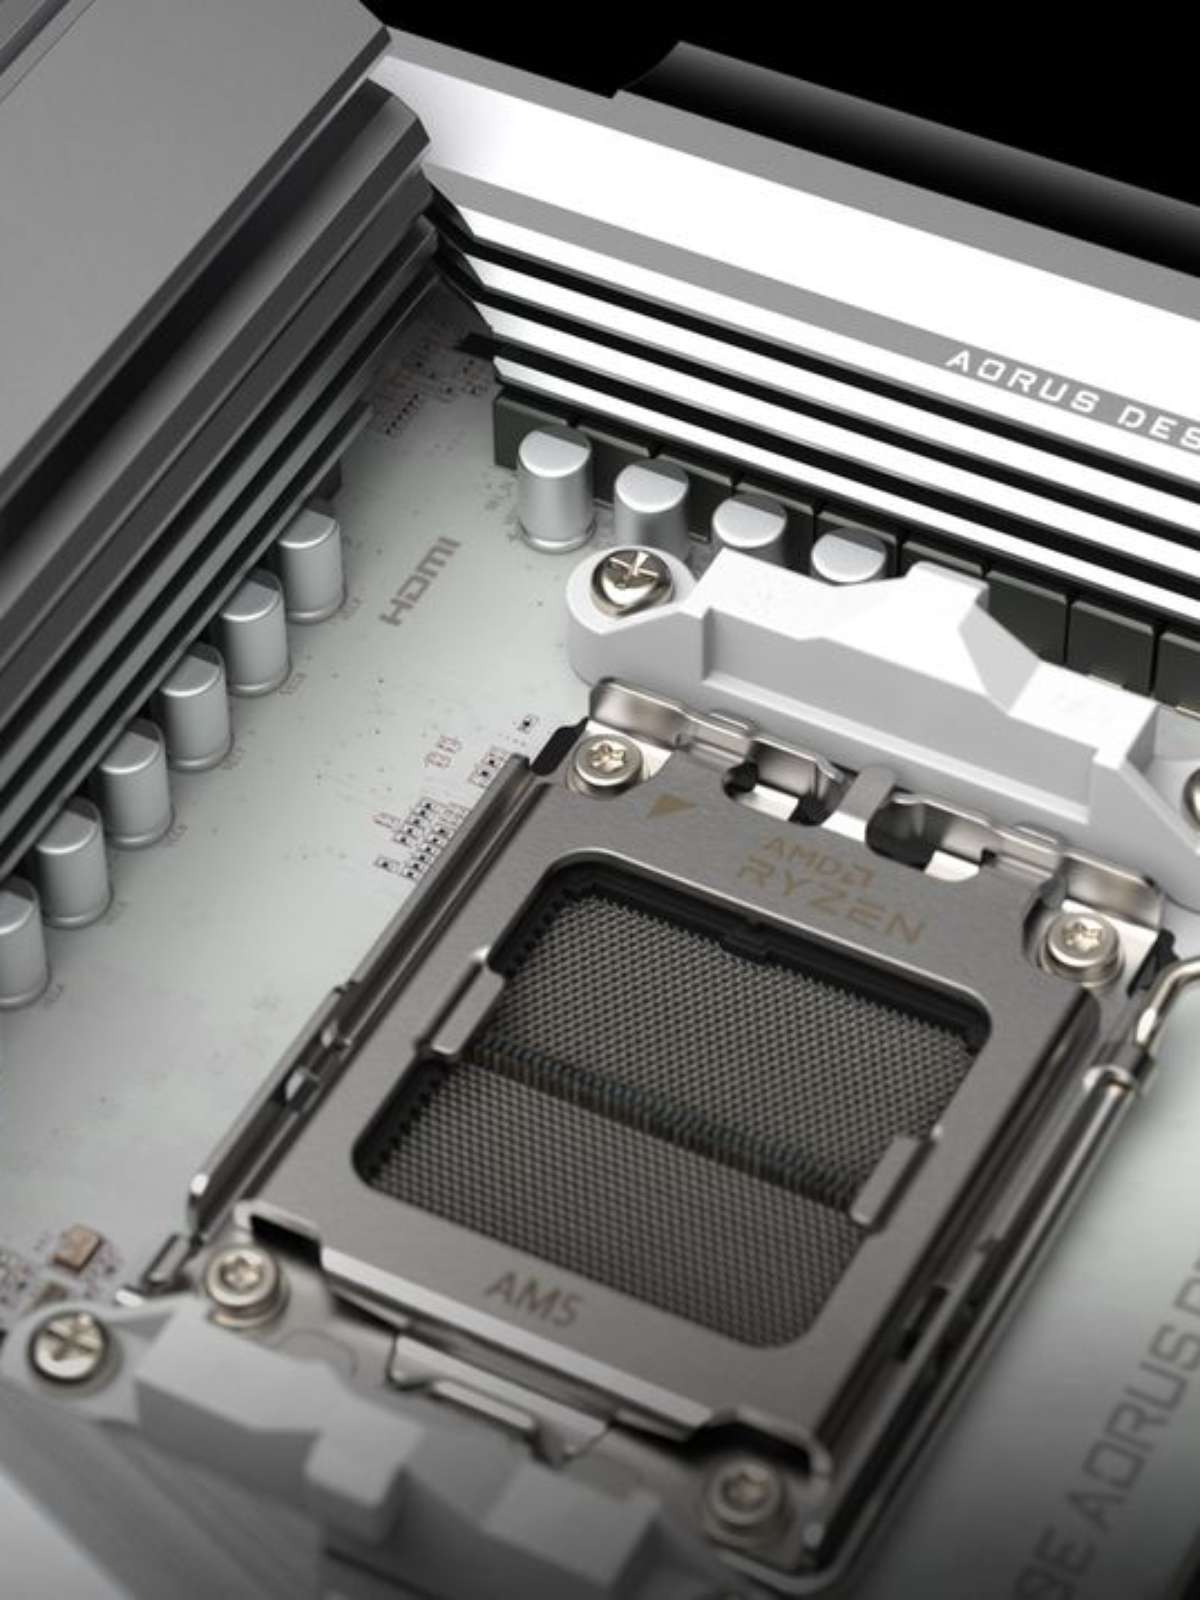 AMD ou Intel  Como escolher o melhor processador para jogos? - Canaltech